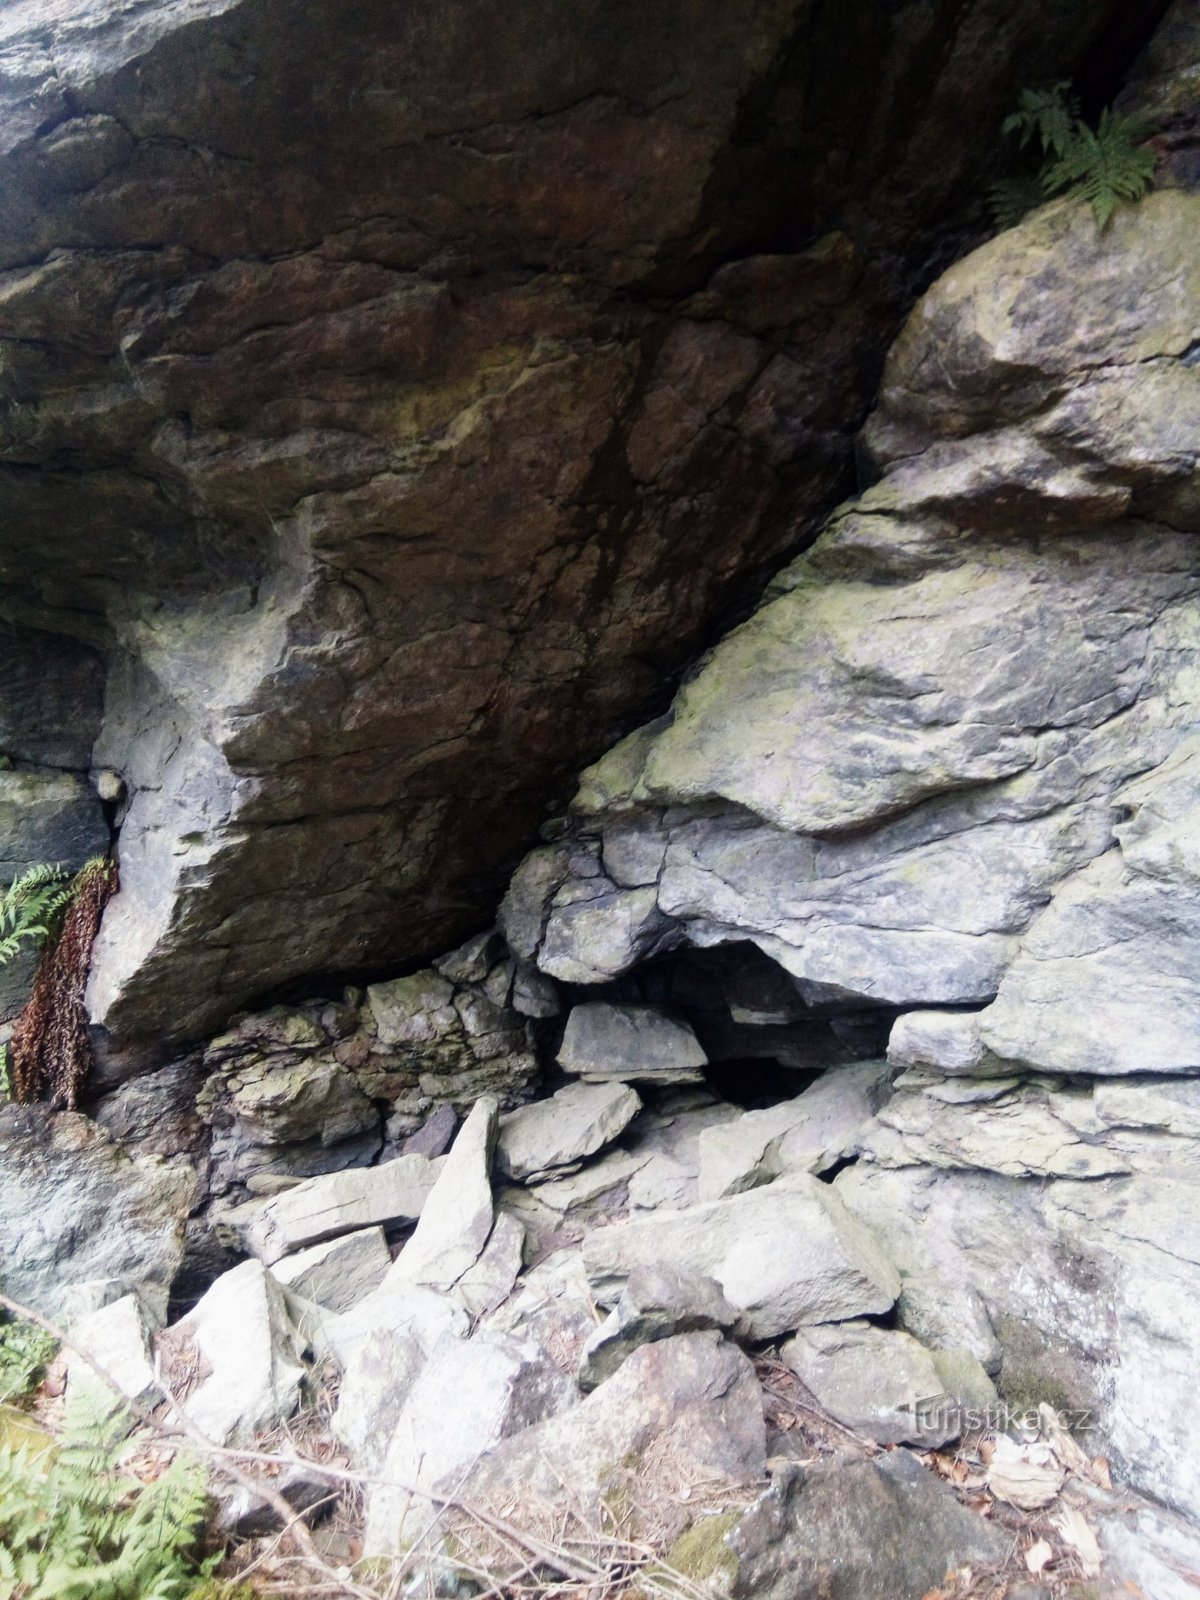 Ruta educativa circuito Sudslavický o detrás de rocas, cuevas, escaleras y un viejo tilo